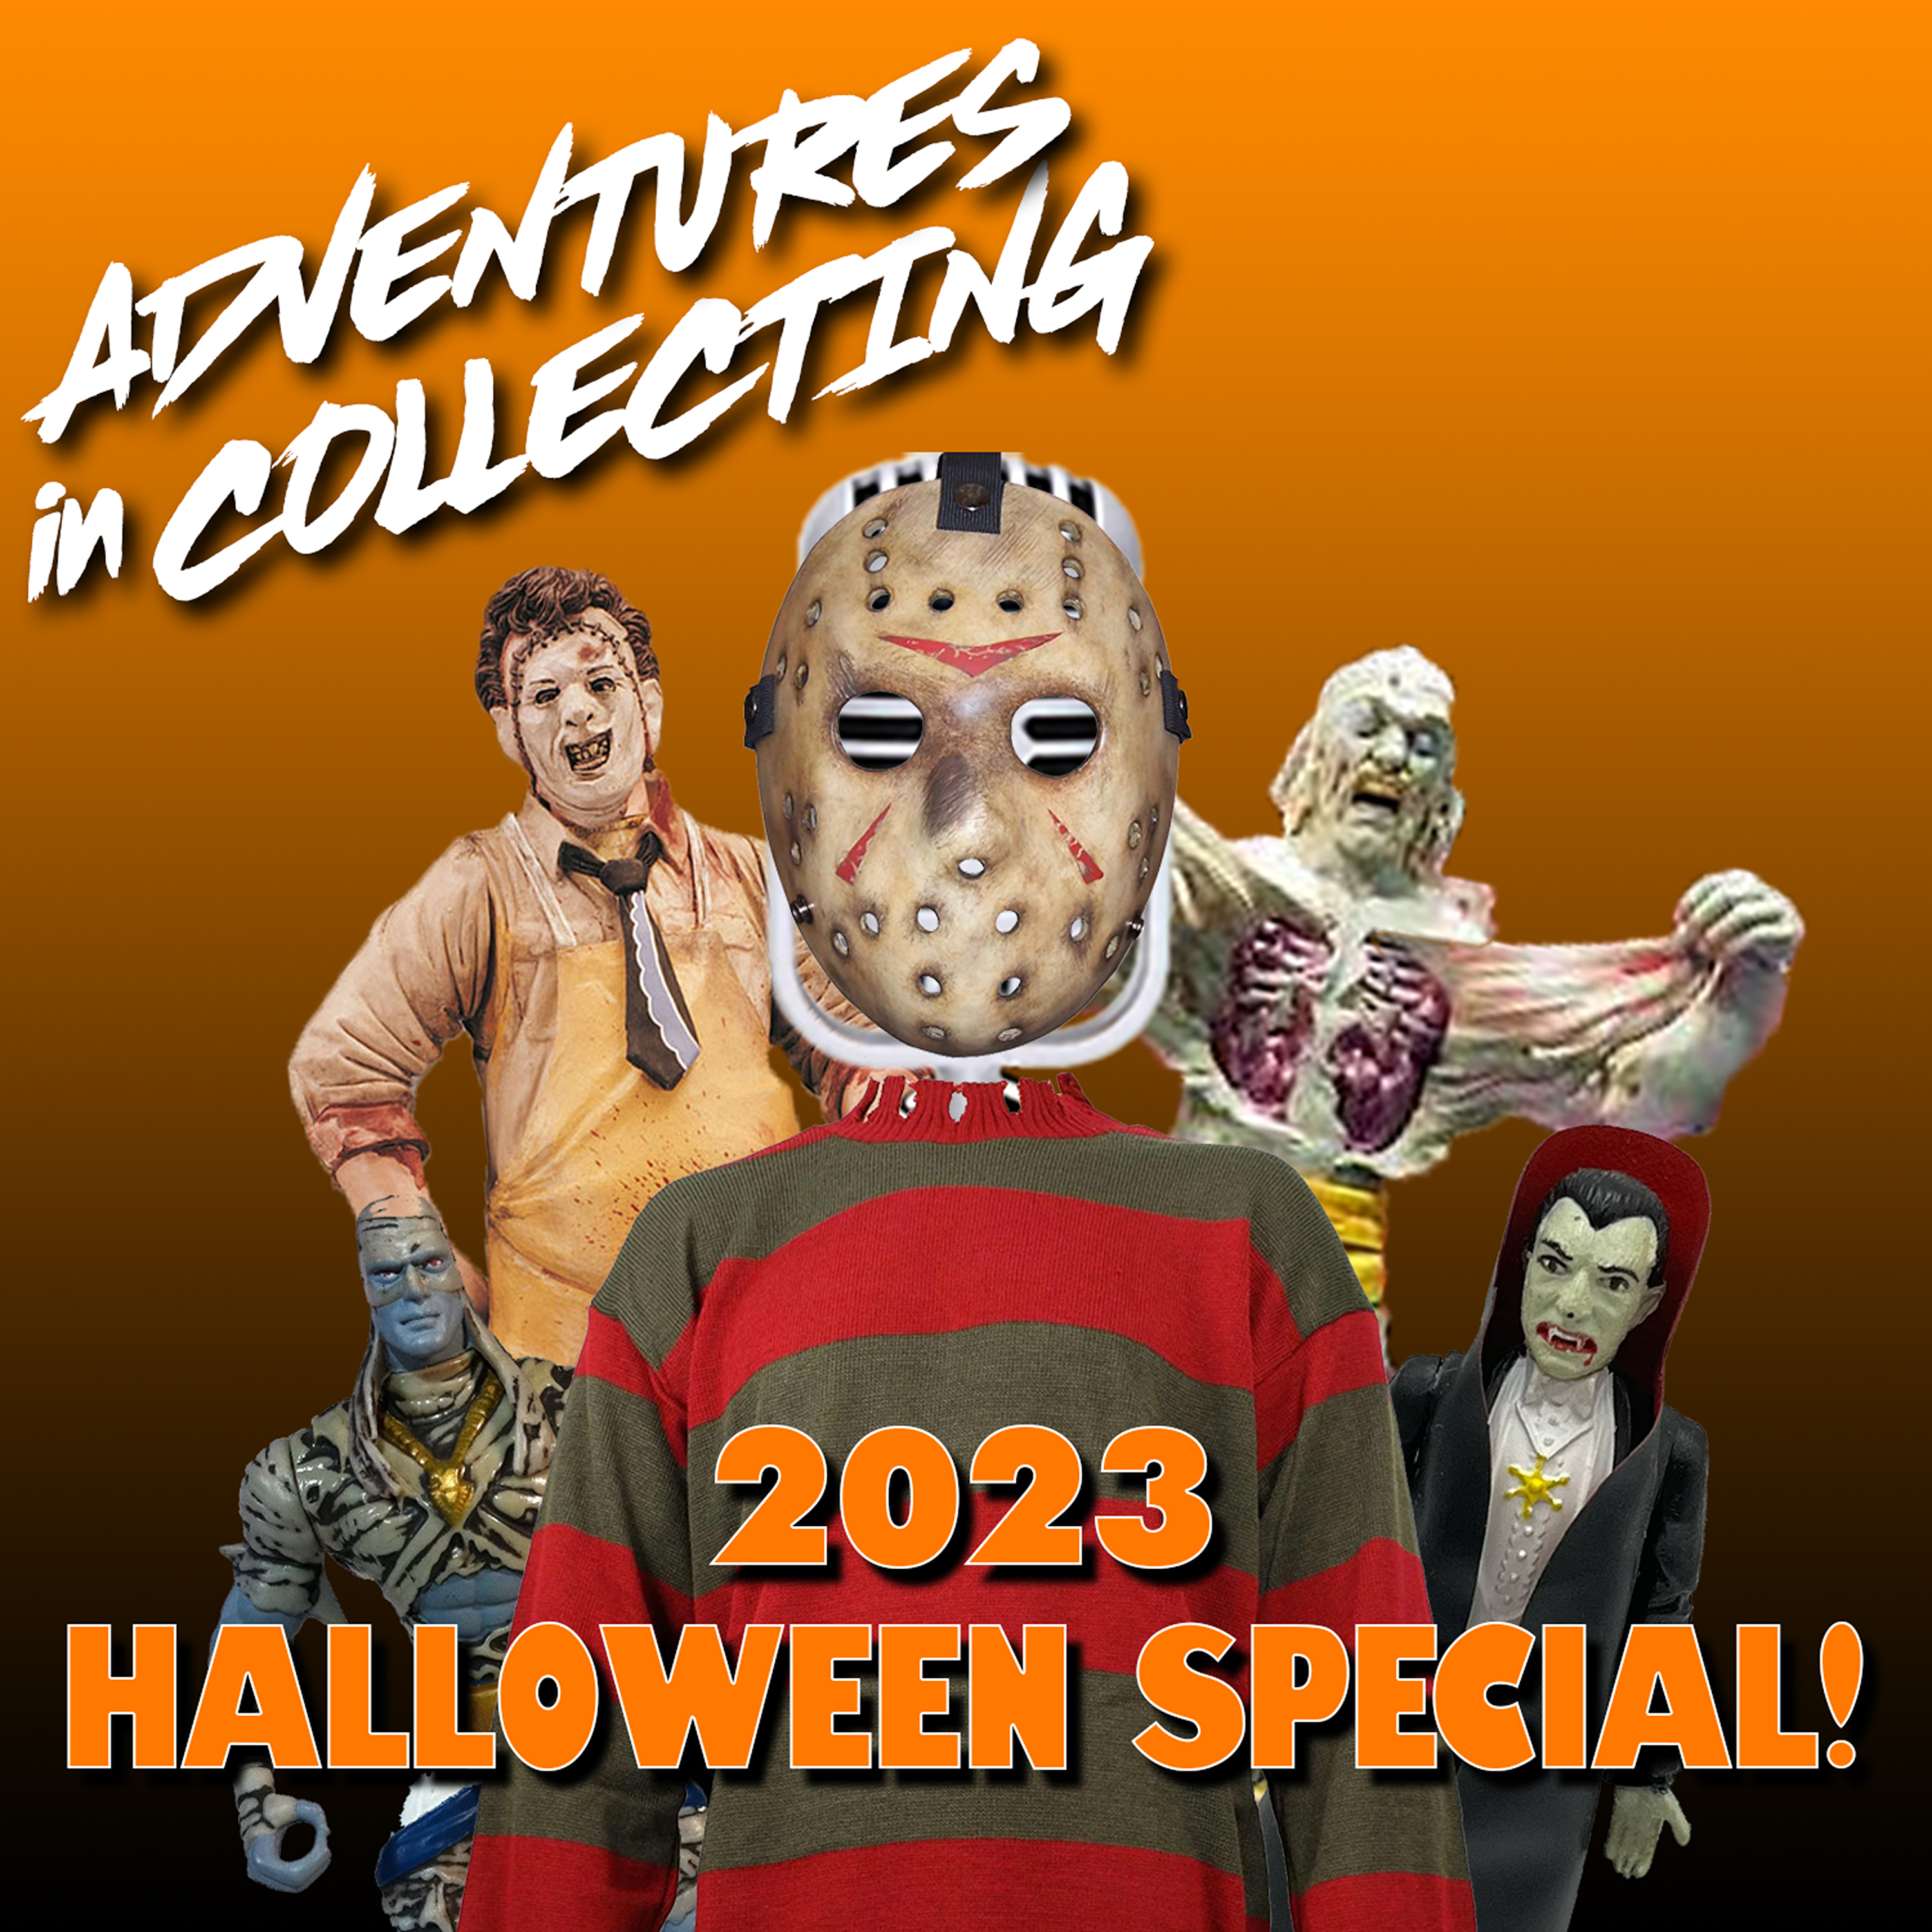 2023 Halloween Special!